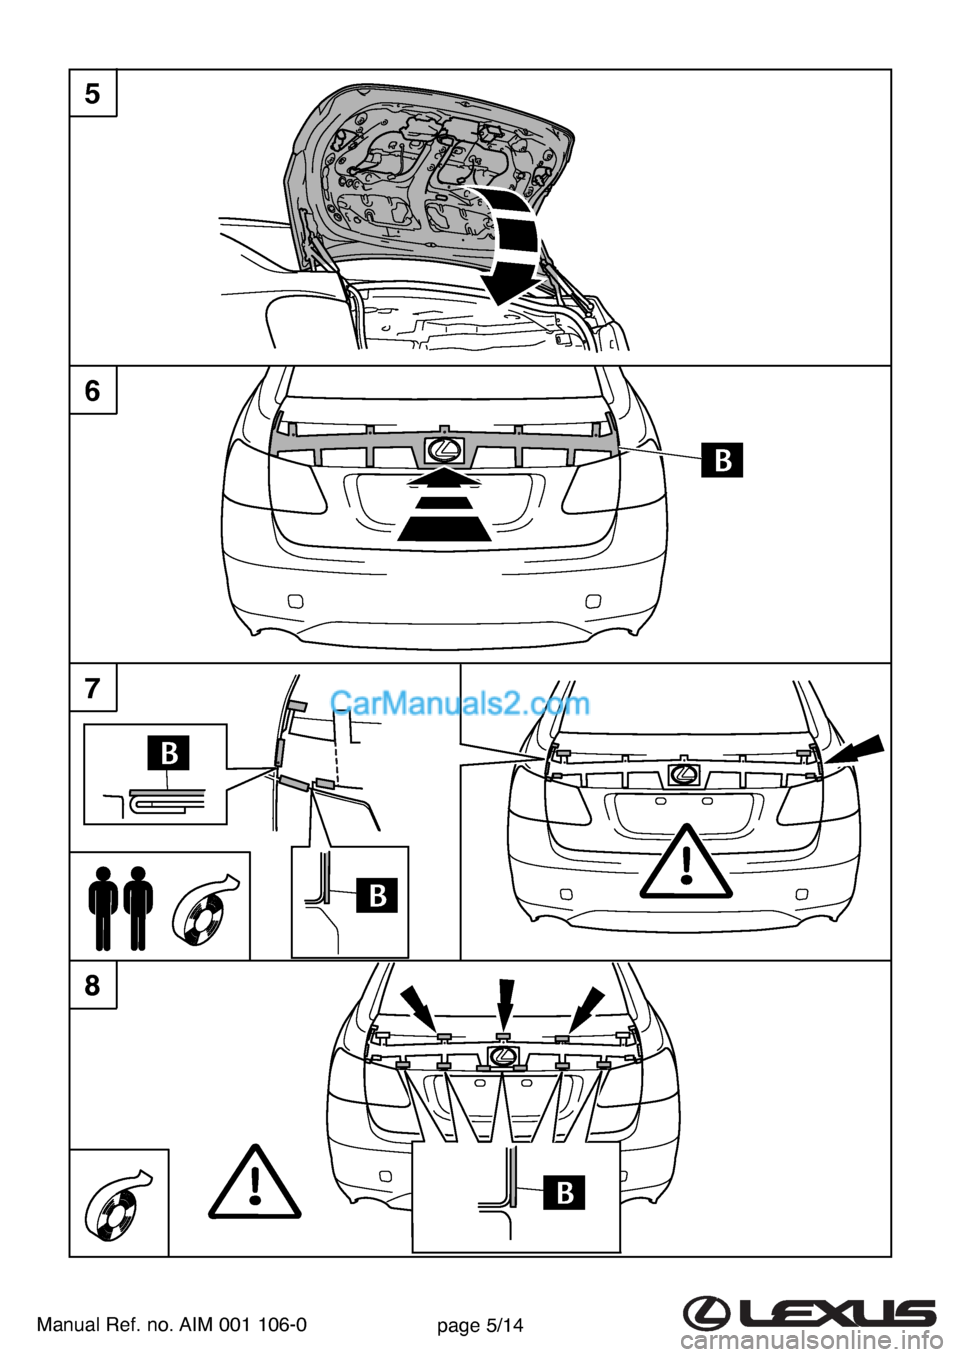 Lexus GS300 2007  Rear Spoiler Manual Ref. no. AIM 001 106-0page 5/14
5
6
8
7  